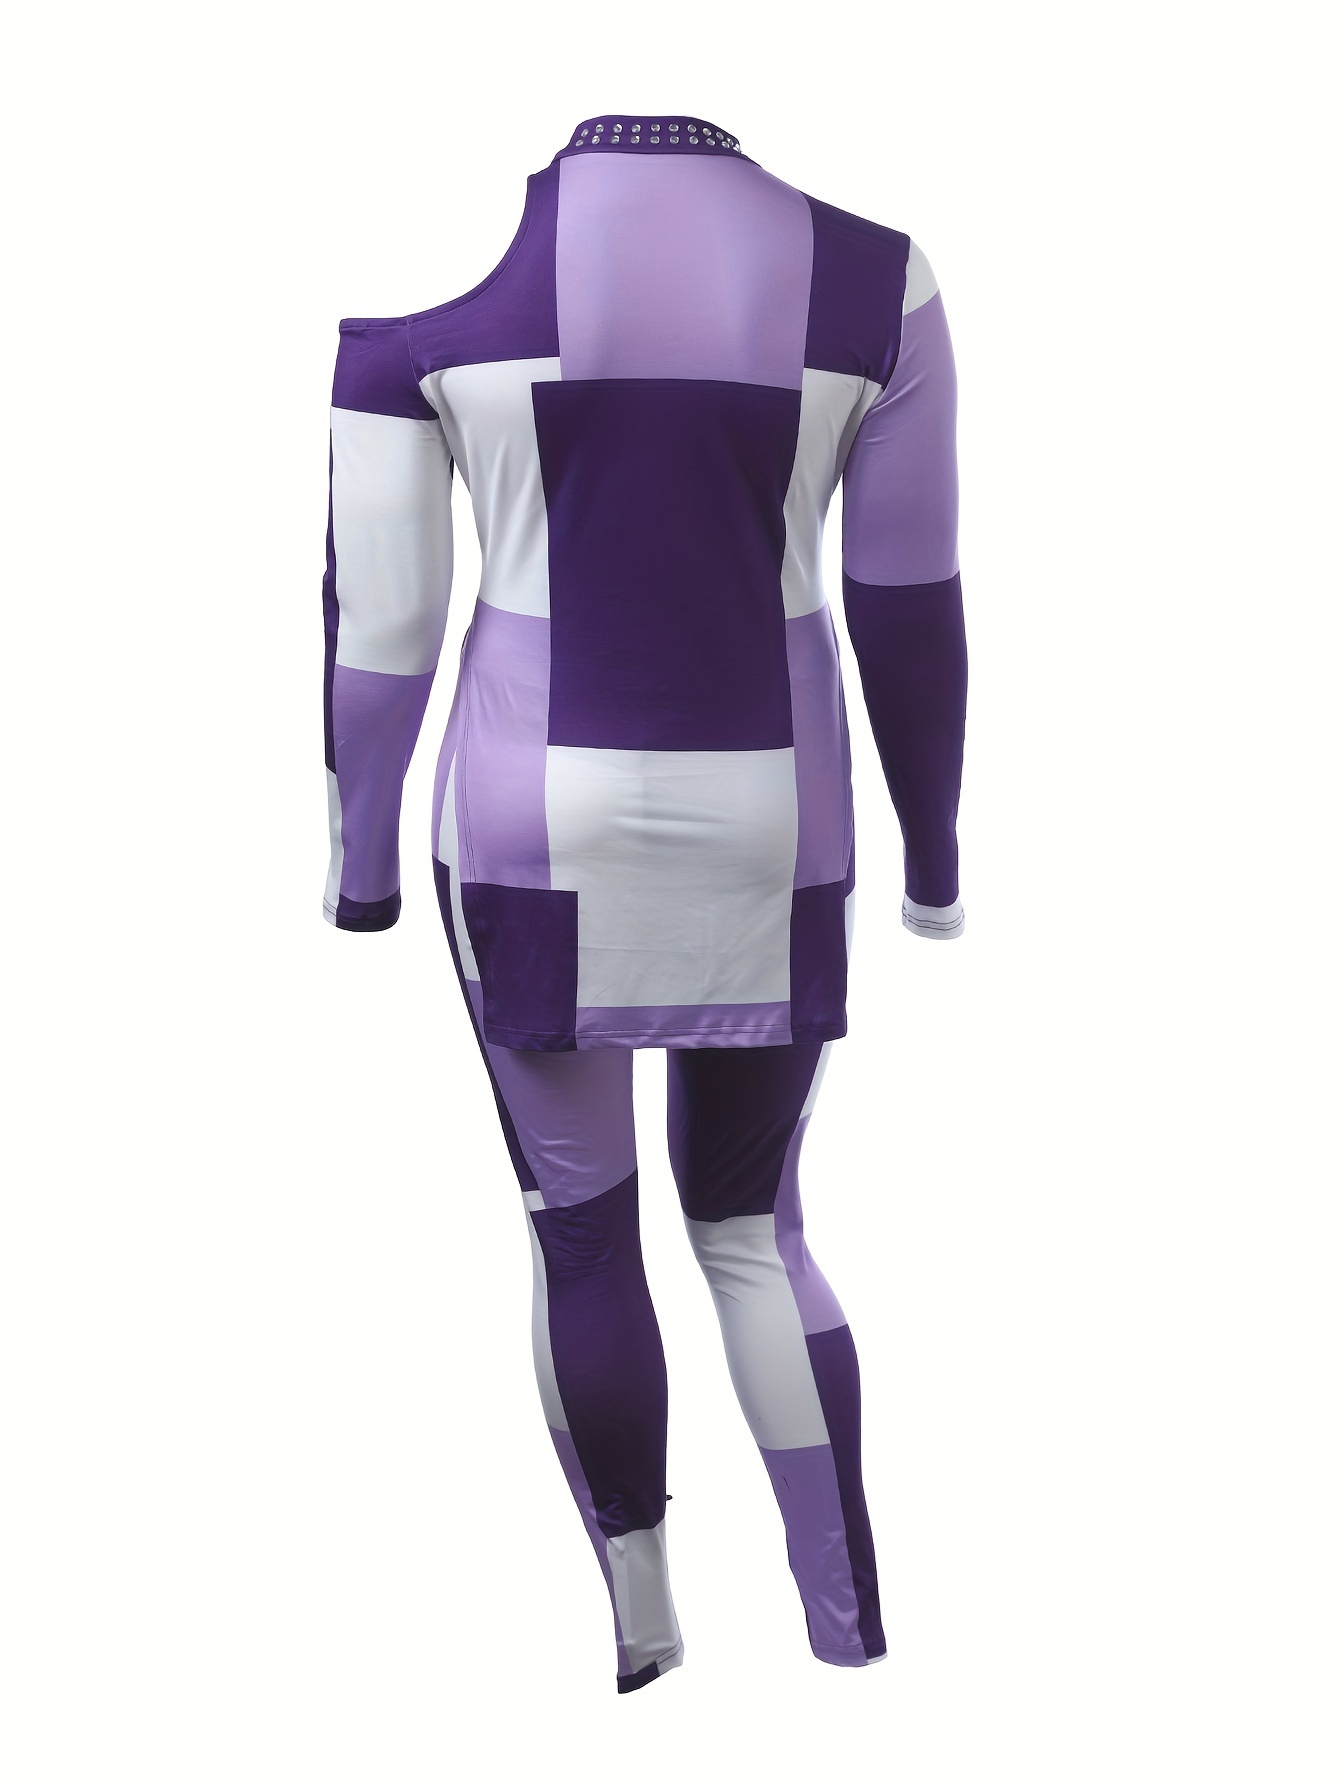 KGBAD Women Suit Drop Shoulder Solid Top & Leggings Set (Color : Lilac  Purple, Size : L) : Buy Online at Best Price in KSA - Souq is now  : Fashion